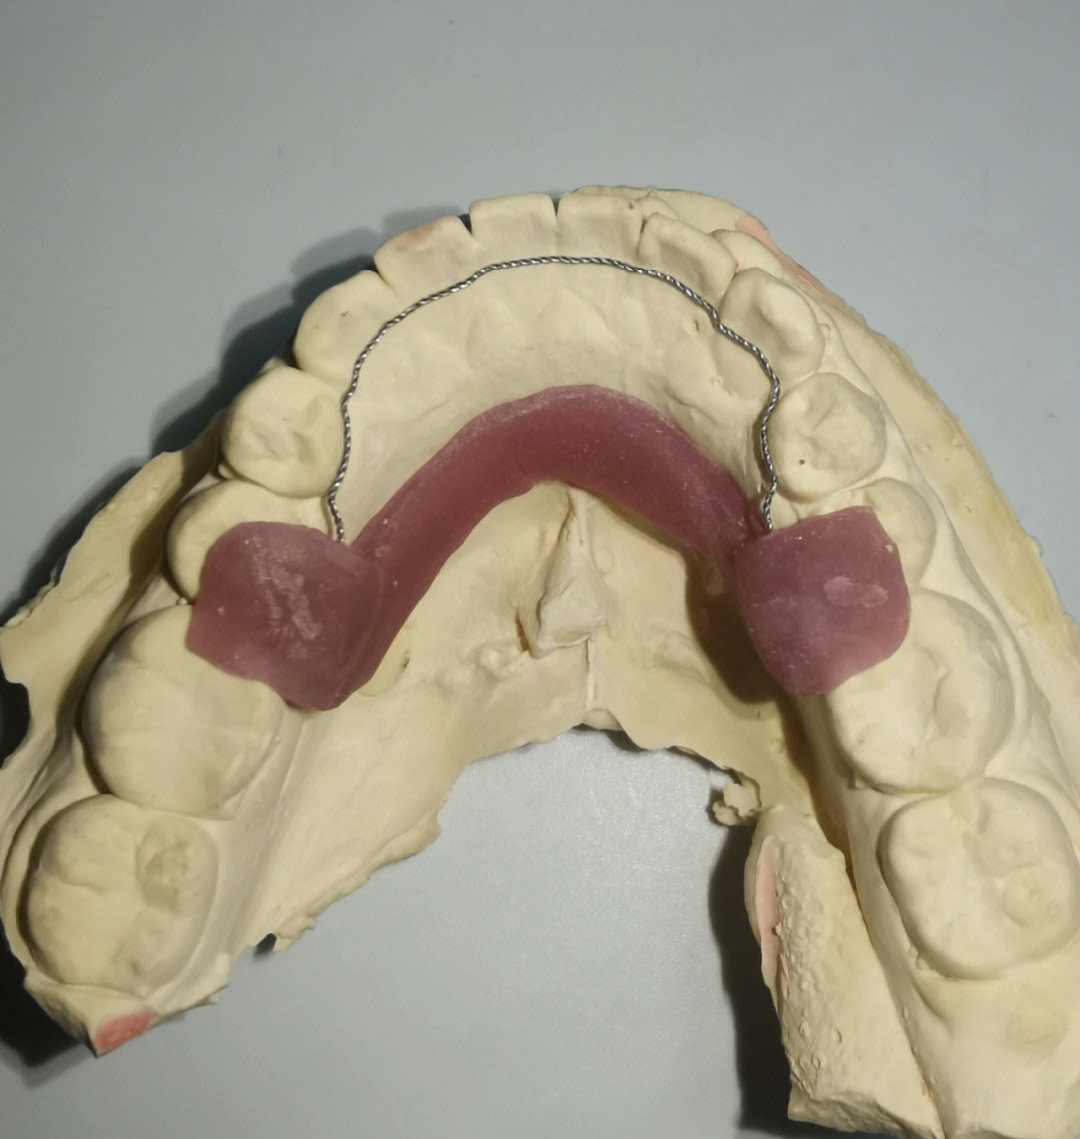 由于牙齿在新的位置仍然不稳定,往往需要佩戴保持器,将牙齿保持在牙槽